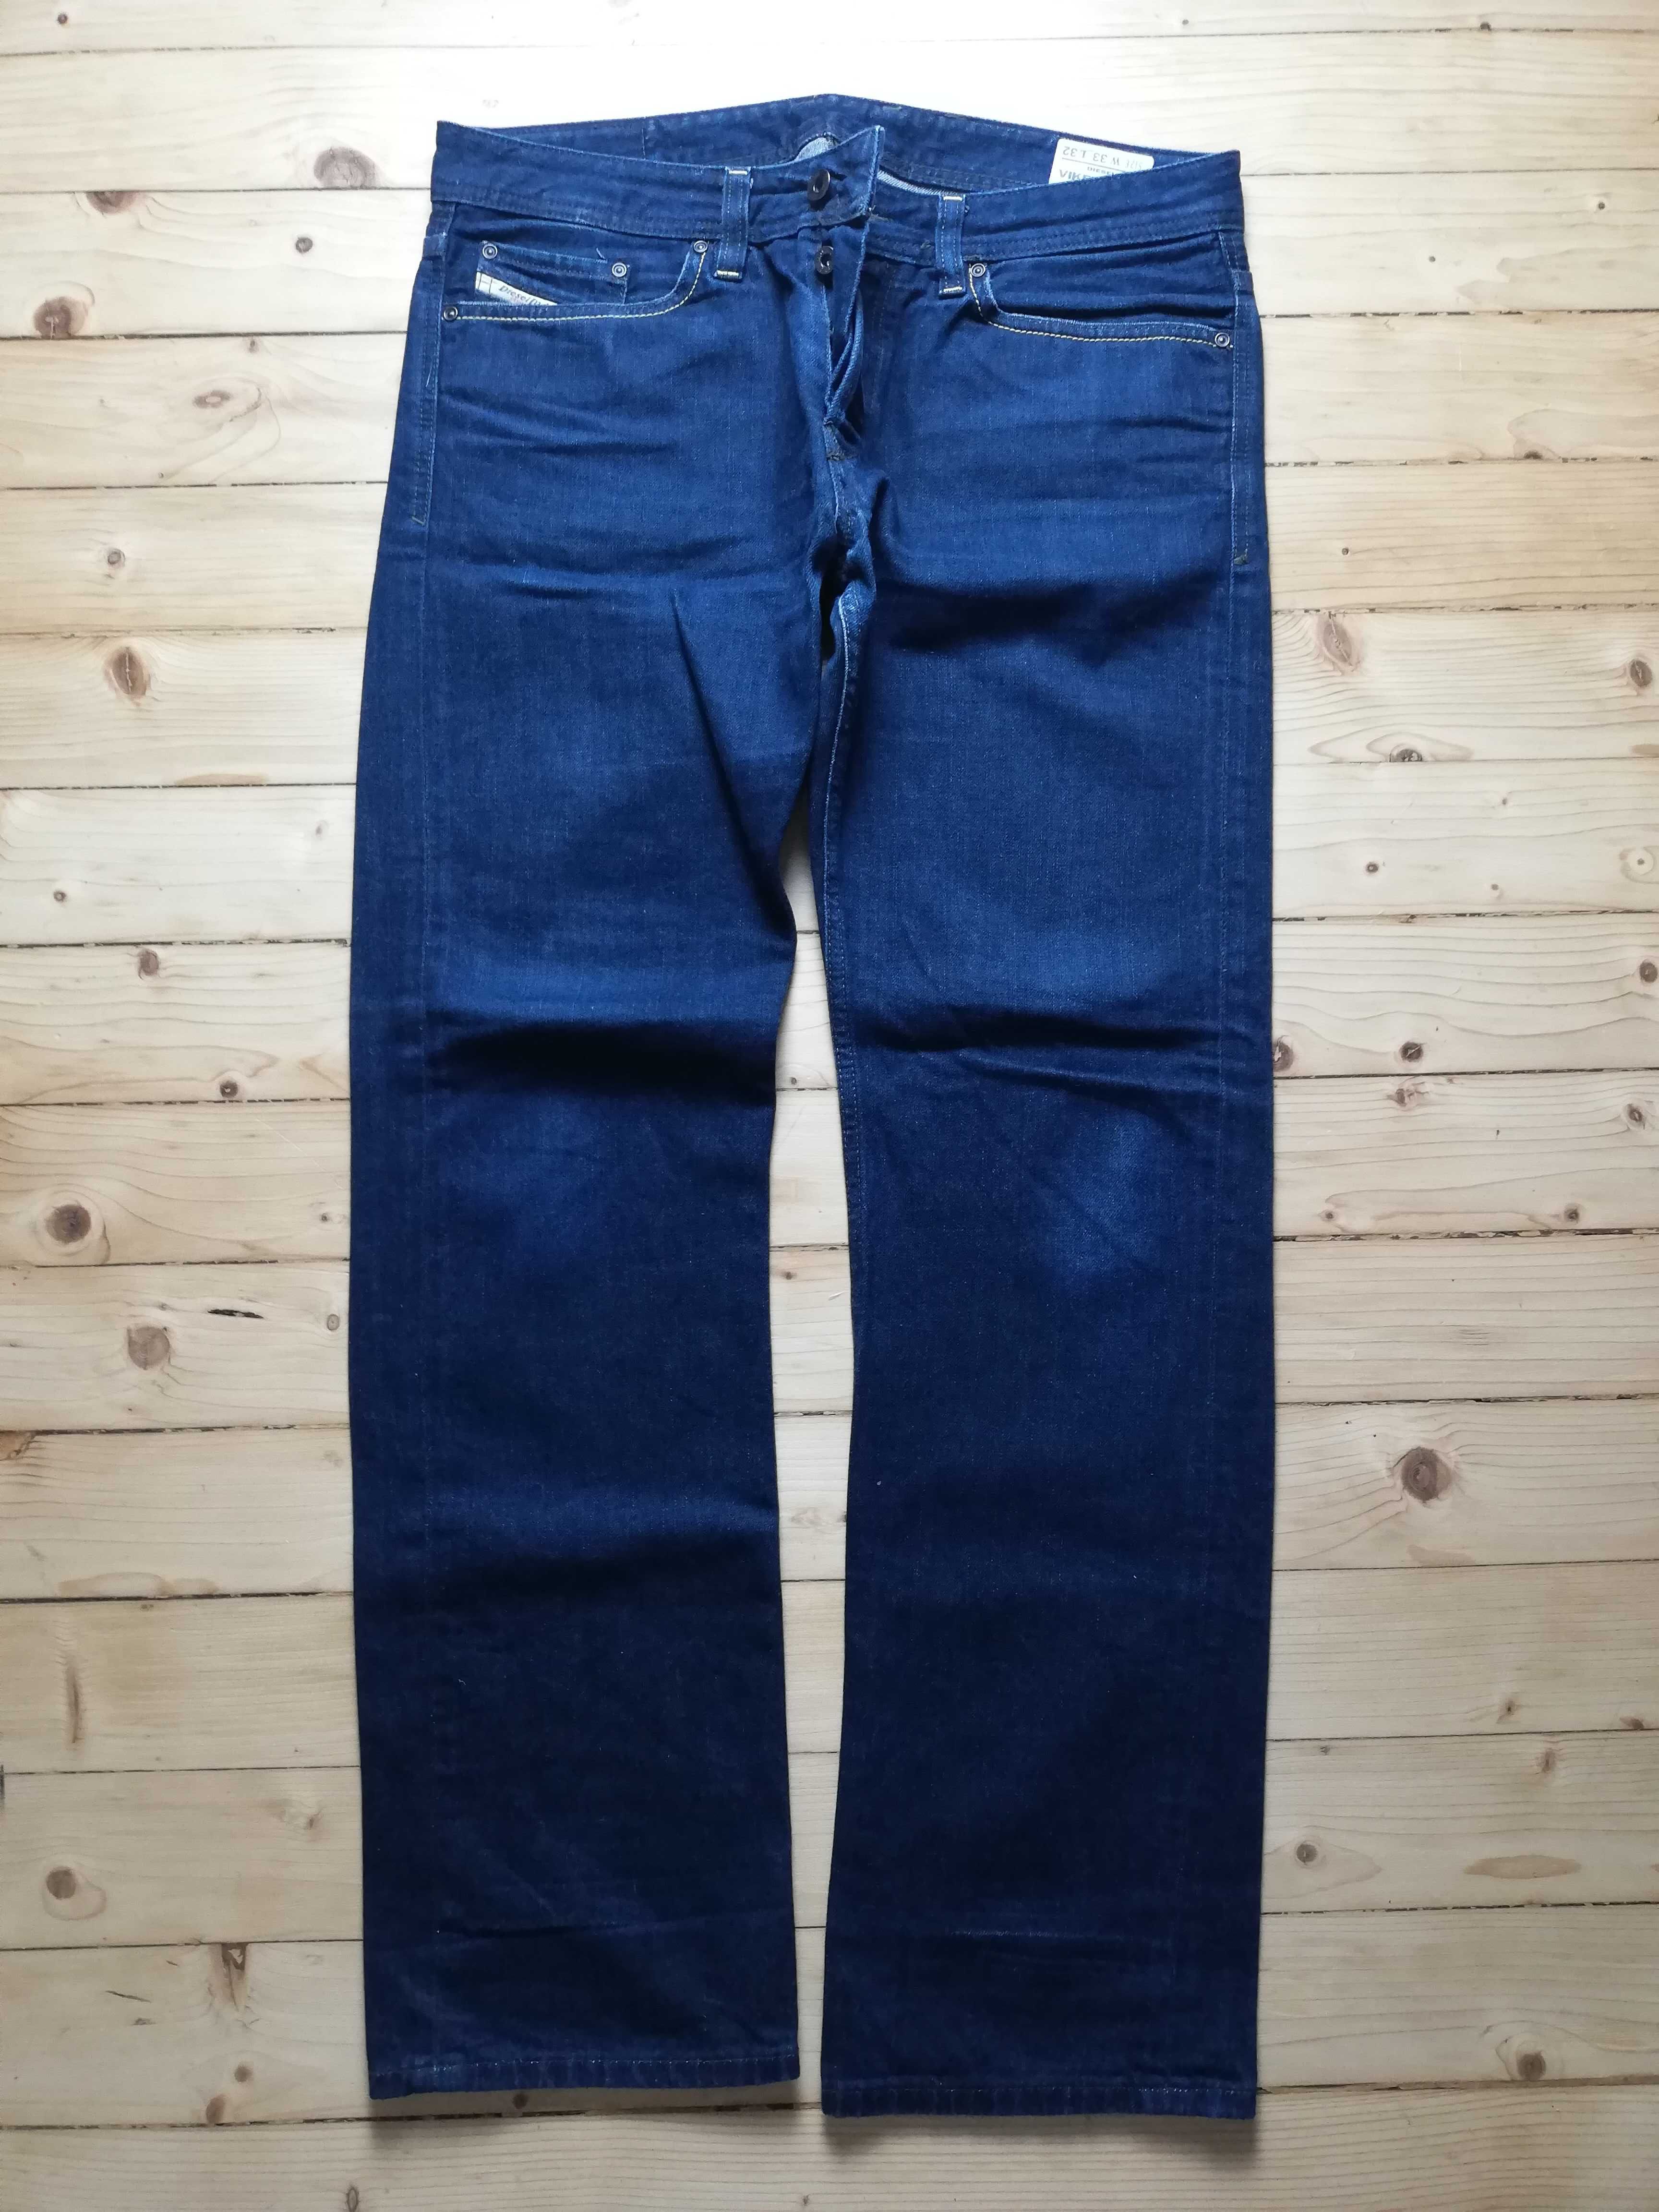 Diesel Men's Blue Jeans - Excelent condition - Rare Vintage Jeans